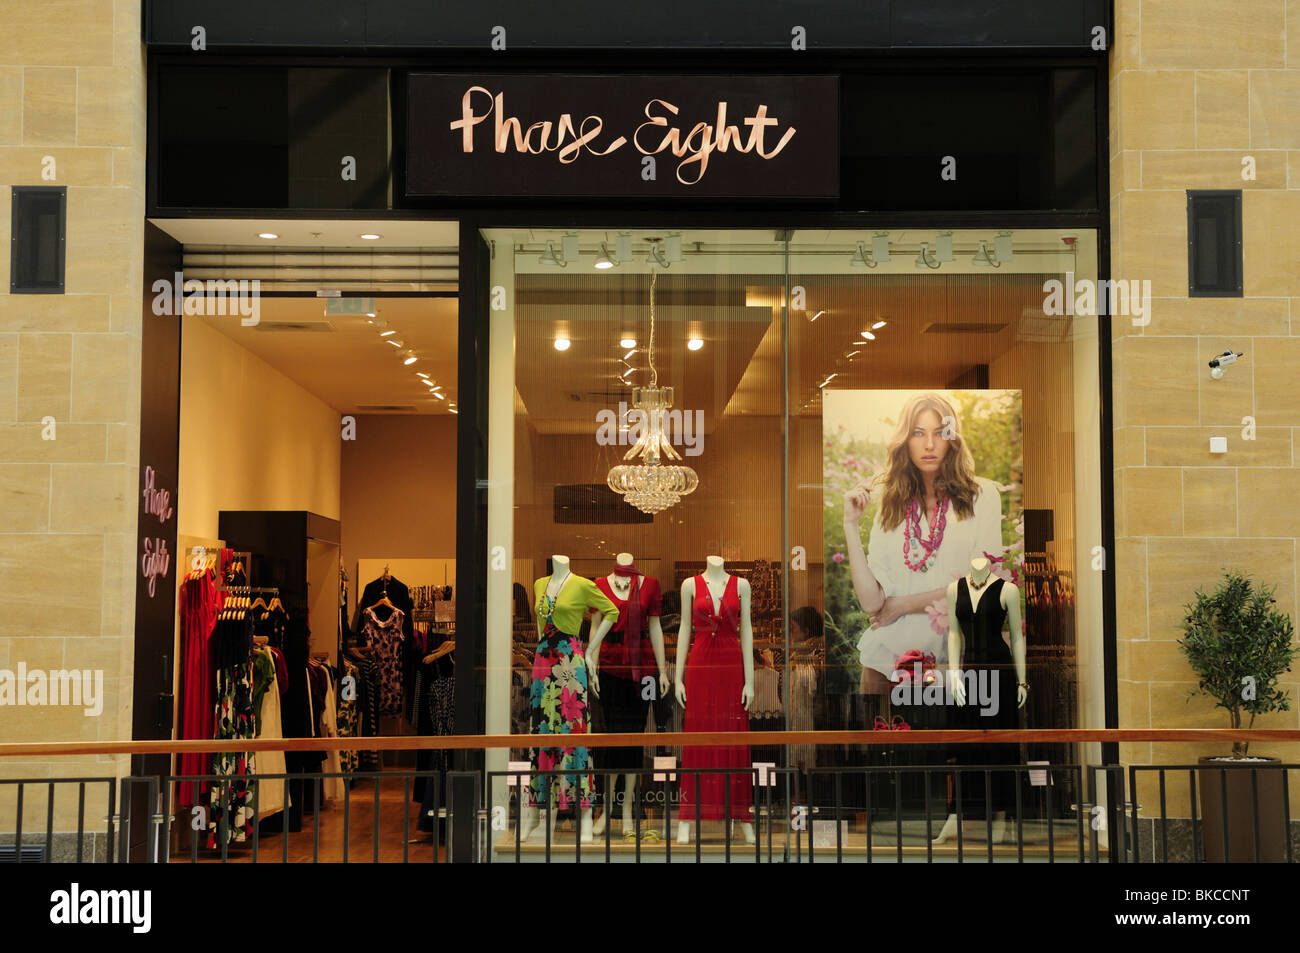 Phase Eight Clothes Shop, Grand Arcade Shopping Centre, Cambridge, England, UK Stock Photo